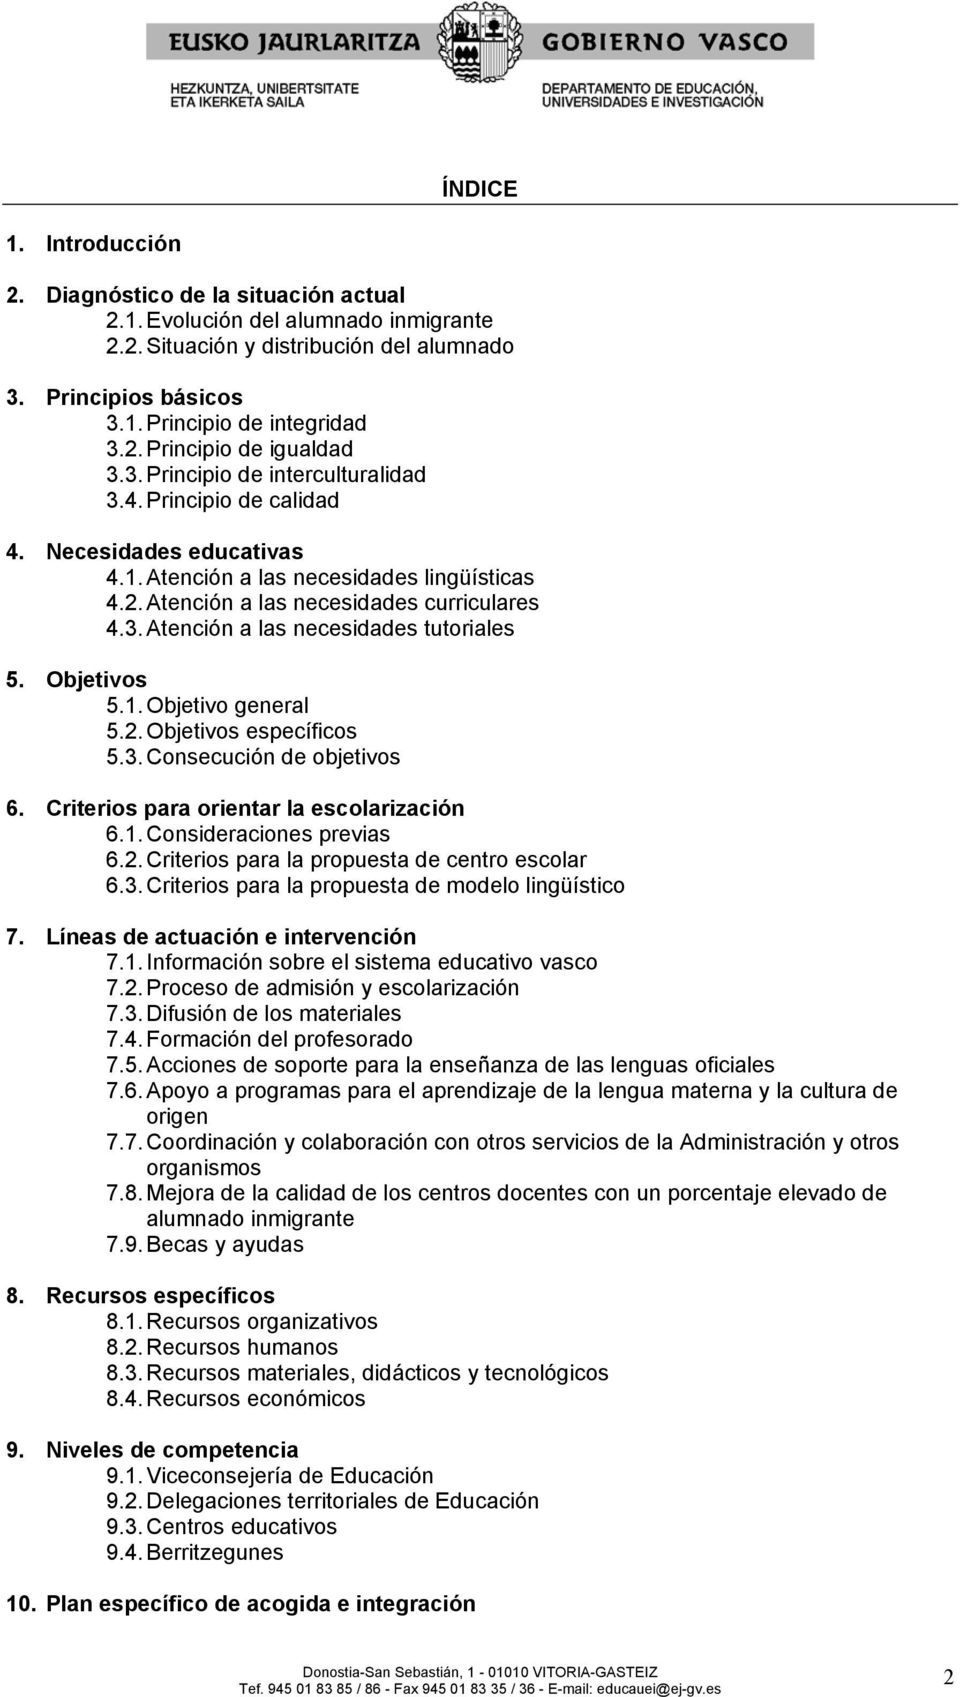 Objetivos 5.1. Objetivo general 5.2. Objetivos específicos 5.3. Consecución de objetivos 6. Criterios para orientar la escolarización 6.1. Consideraciones previas 6.2. Criterios para la propuesta de centro escolar 6.